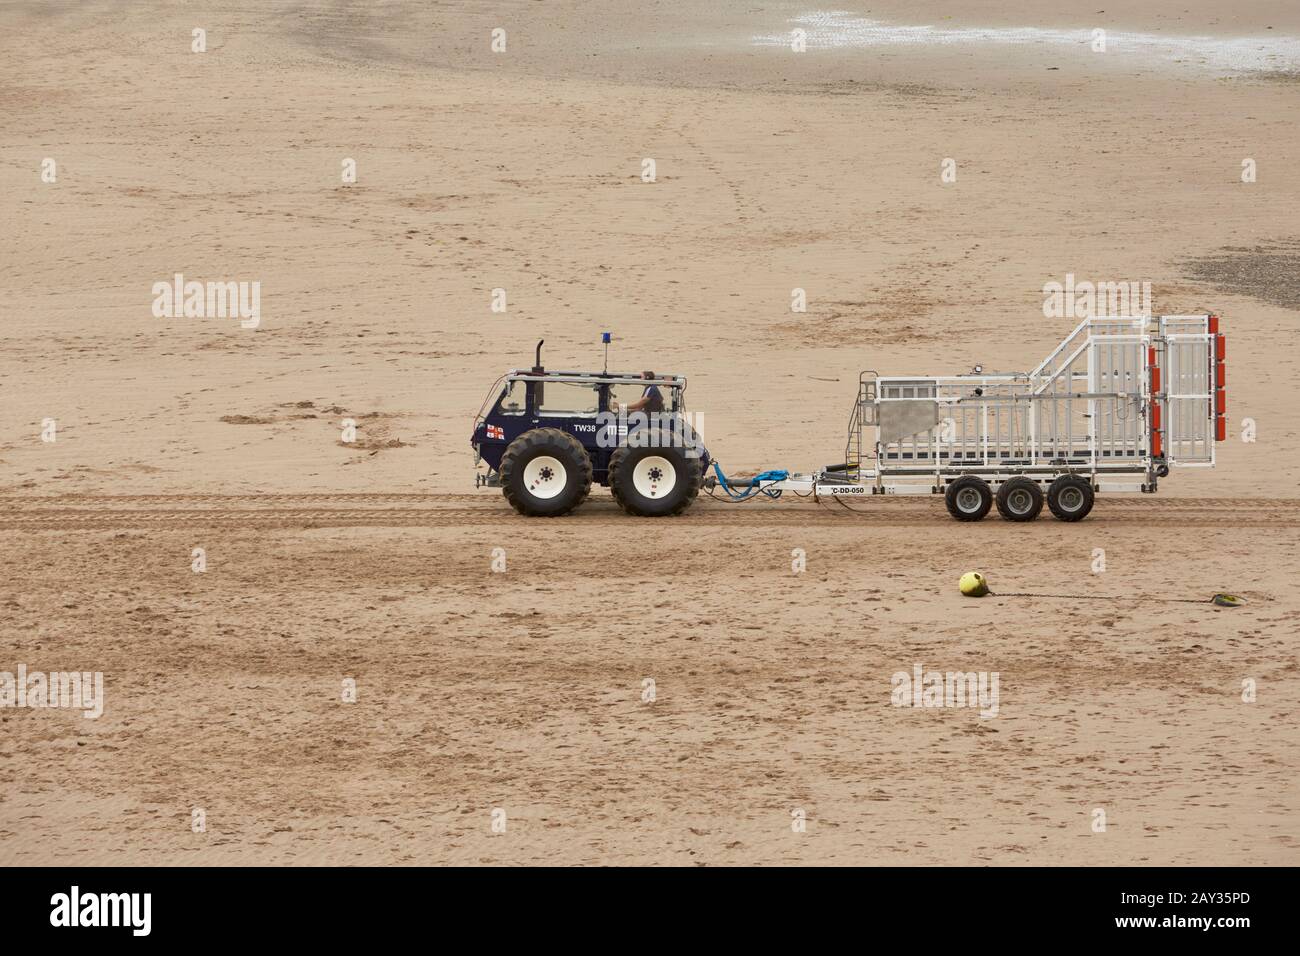 Tracteur amphibie TALUS mb 764, véhicule de lancement et de récupération  RLI remorquage d'une remorque à six roues vide sur la plage d'Abersoch sur  la côte nord du pays de galles royaume-uni